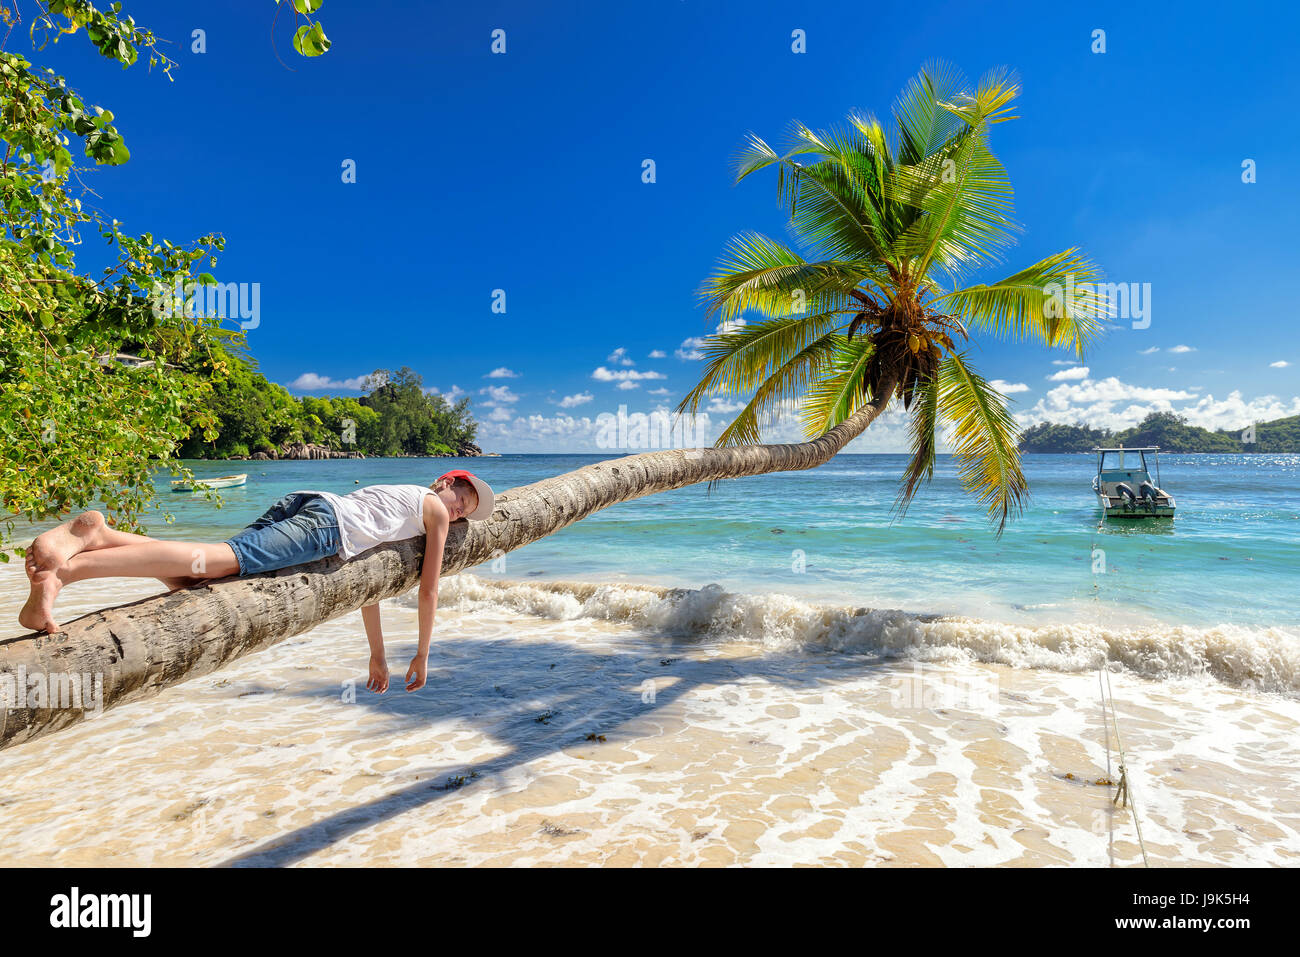 Cute boy resting allongé sur un palmier tropical island le vacationю Banque D'Images